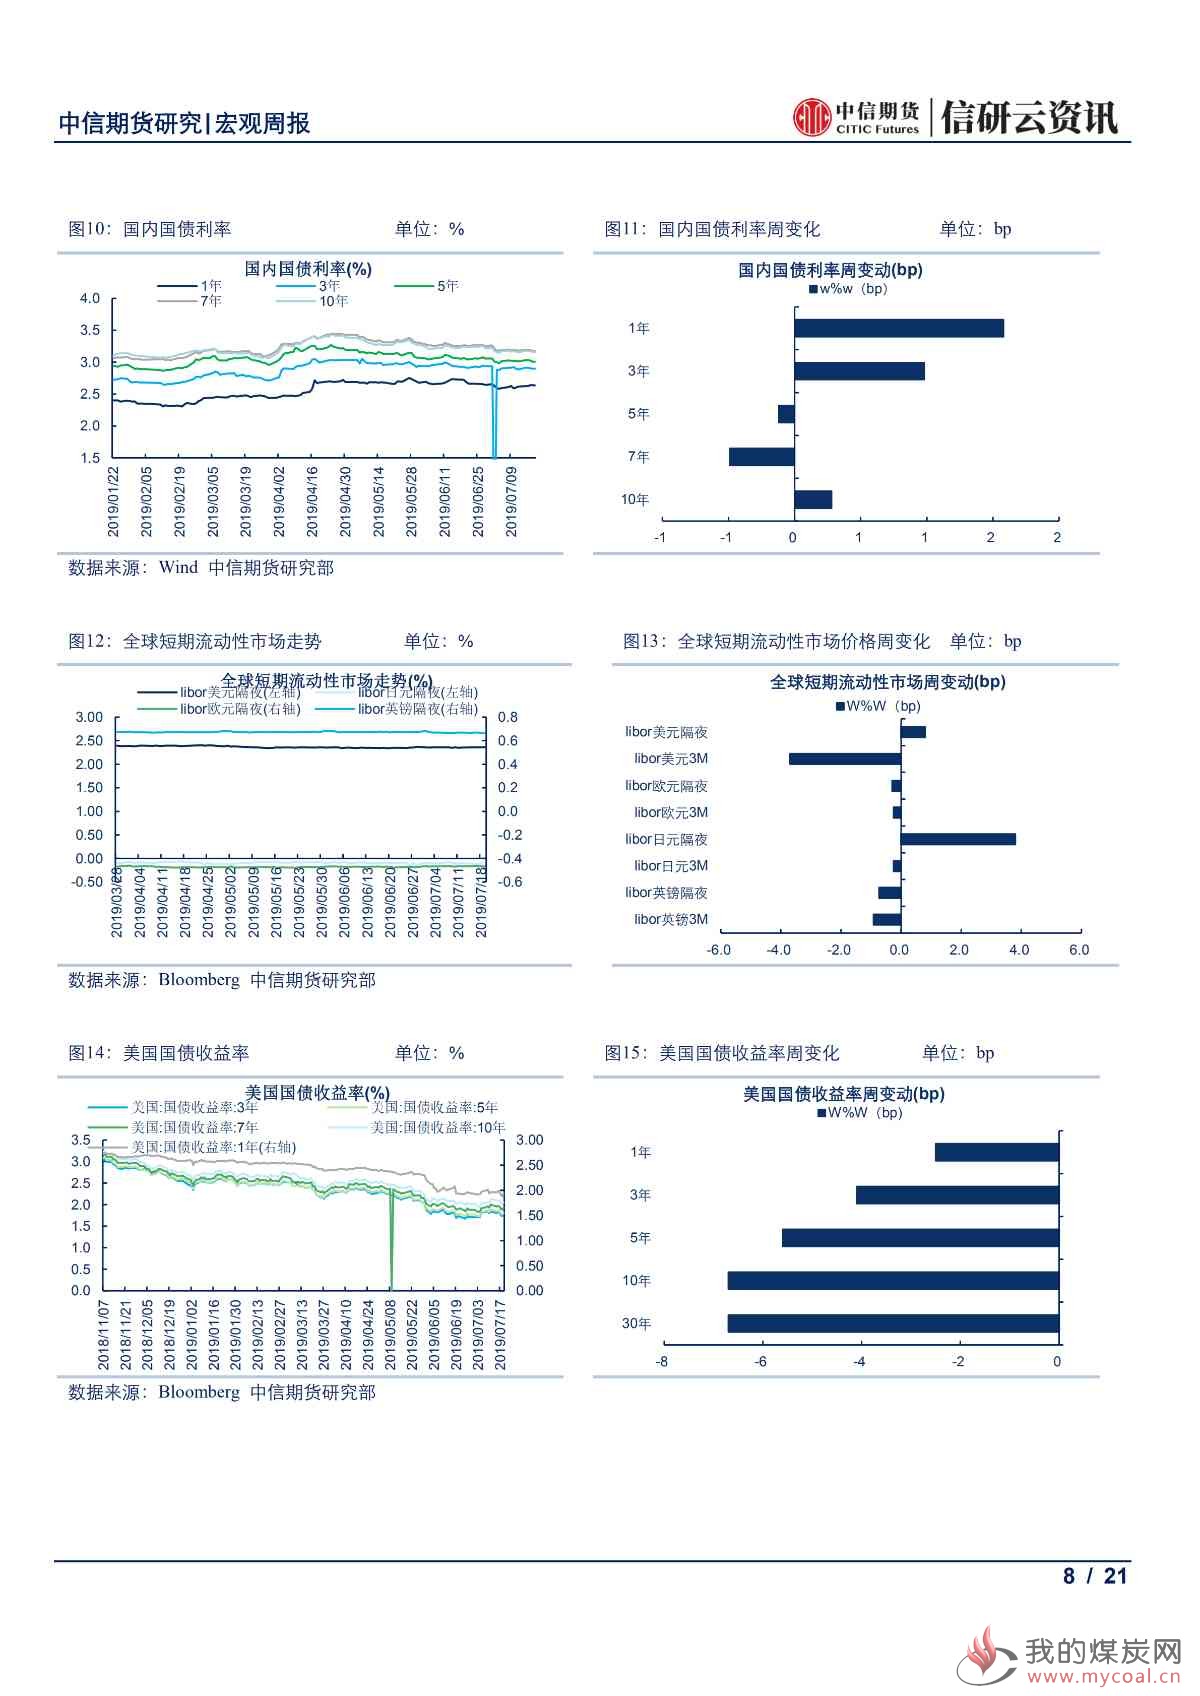 【中信期货宏观】中国上半年经济结构持续改善 欧美央行鸽派倾向愈发明显——周报20190722_07